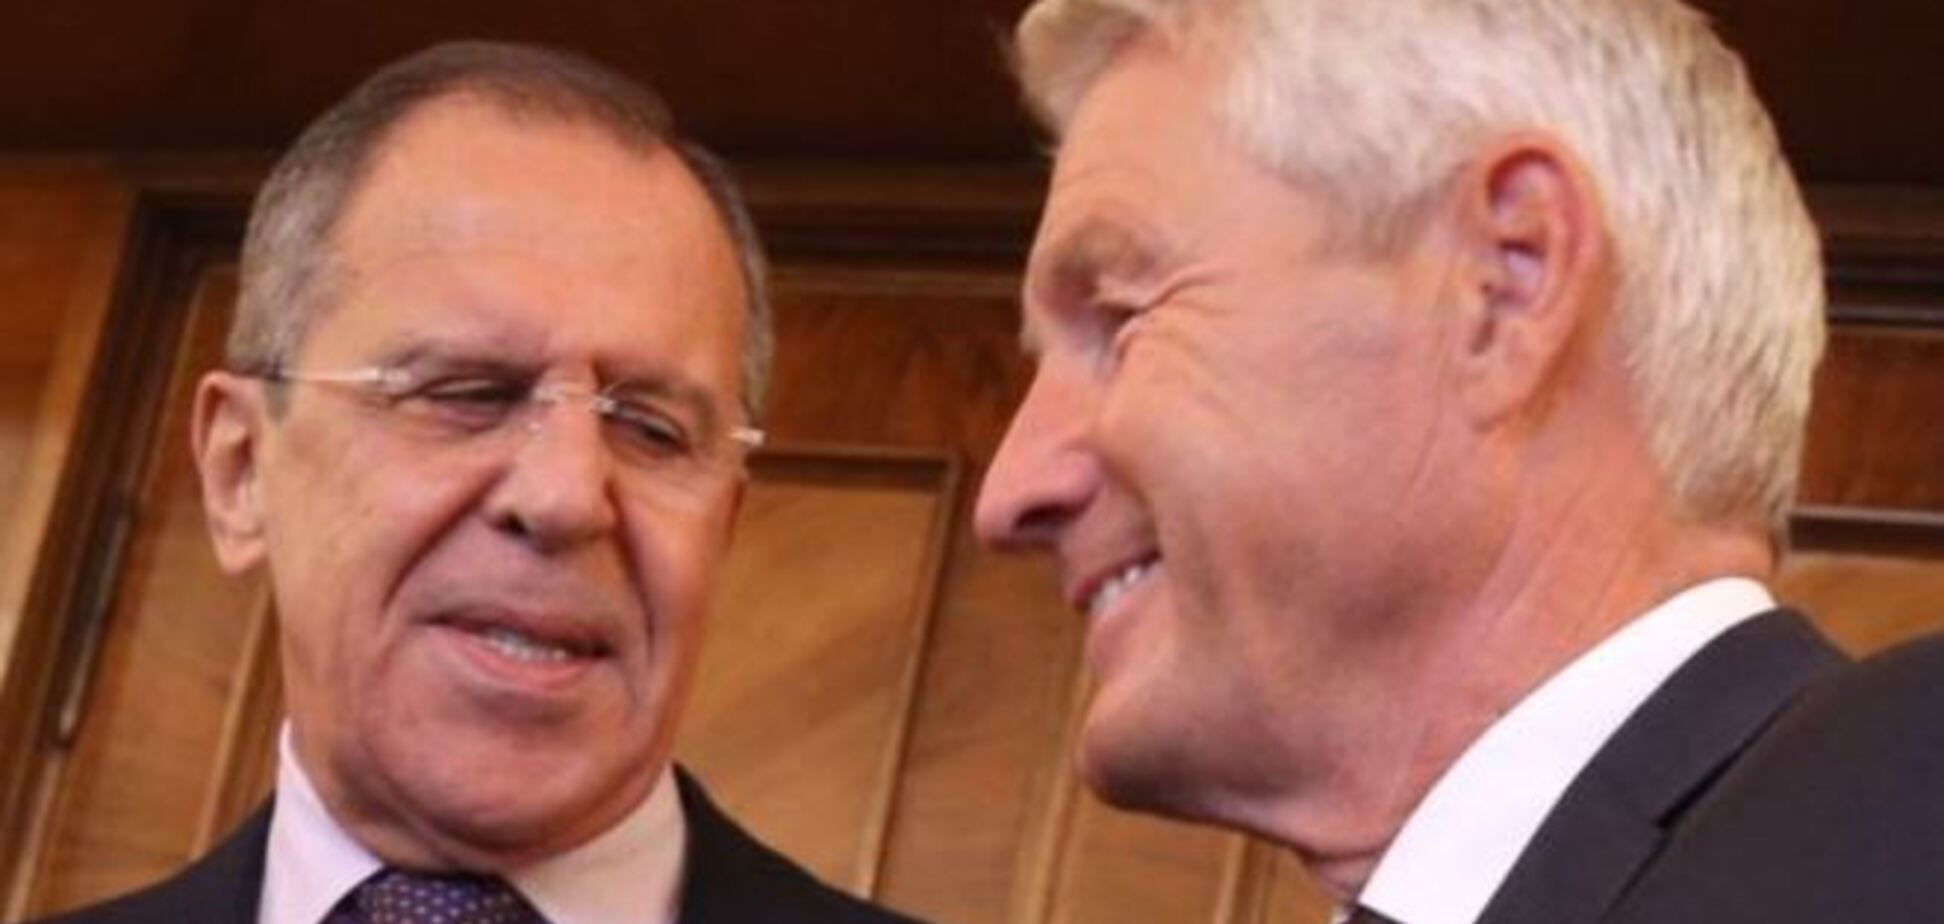 Ягланд на пресс-конференции с Лавровым заявил, что целостность Украины должна быть защищена